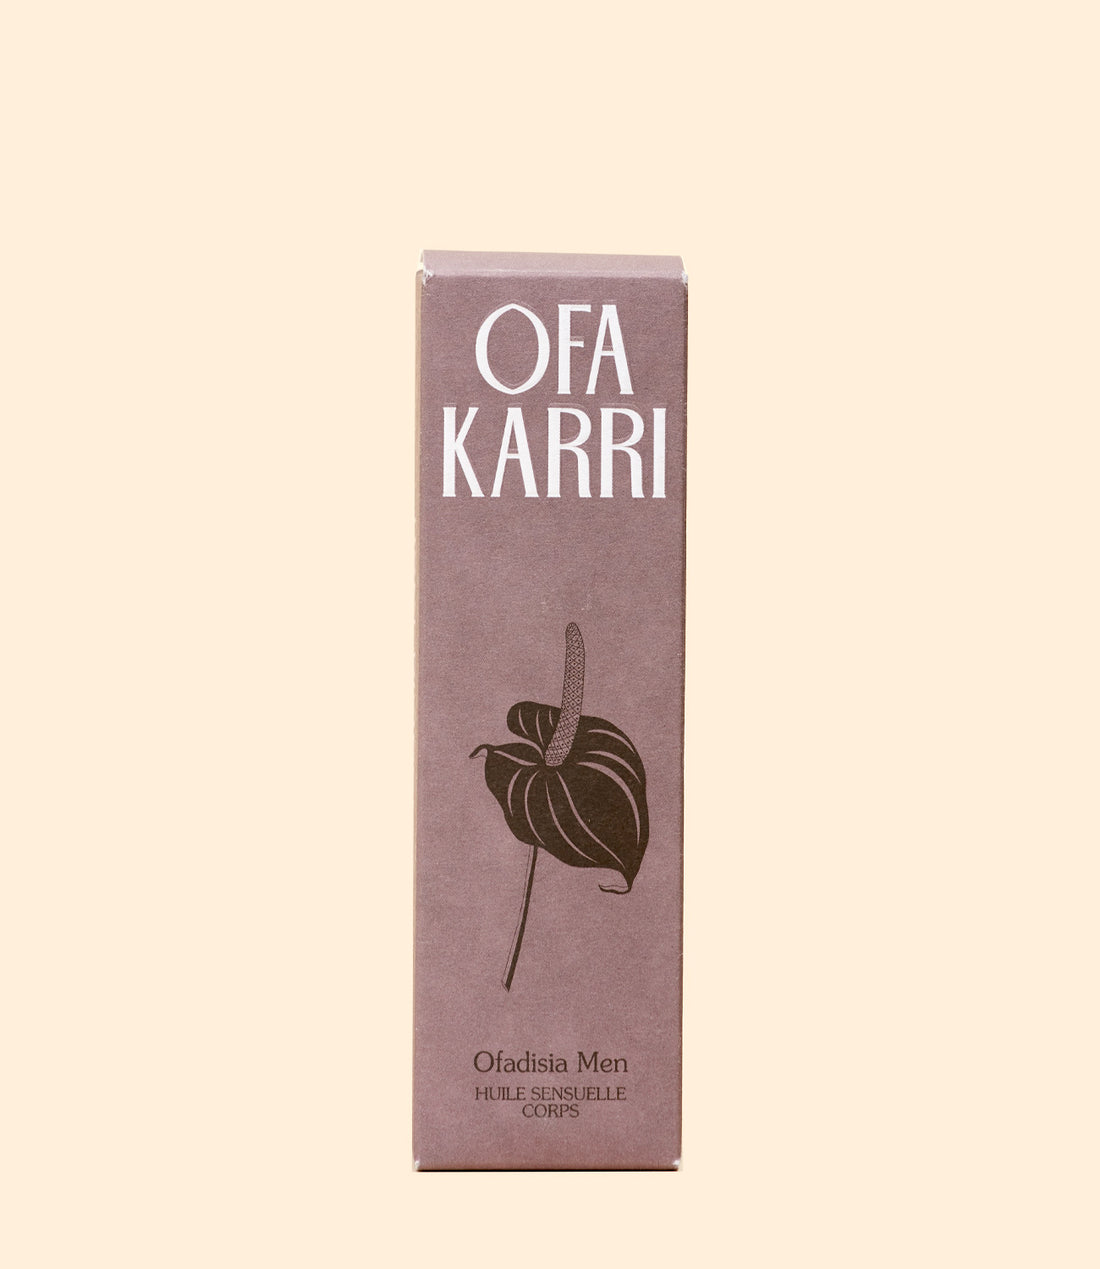 huile sensuelle Ofadisia Men 50 ml par Ofa Karri